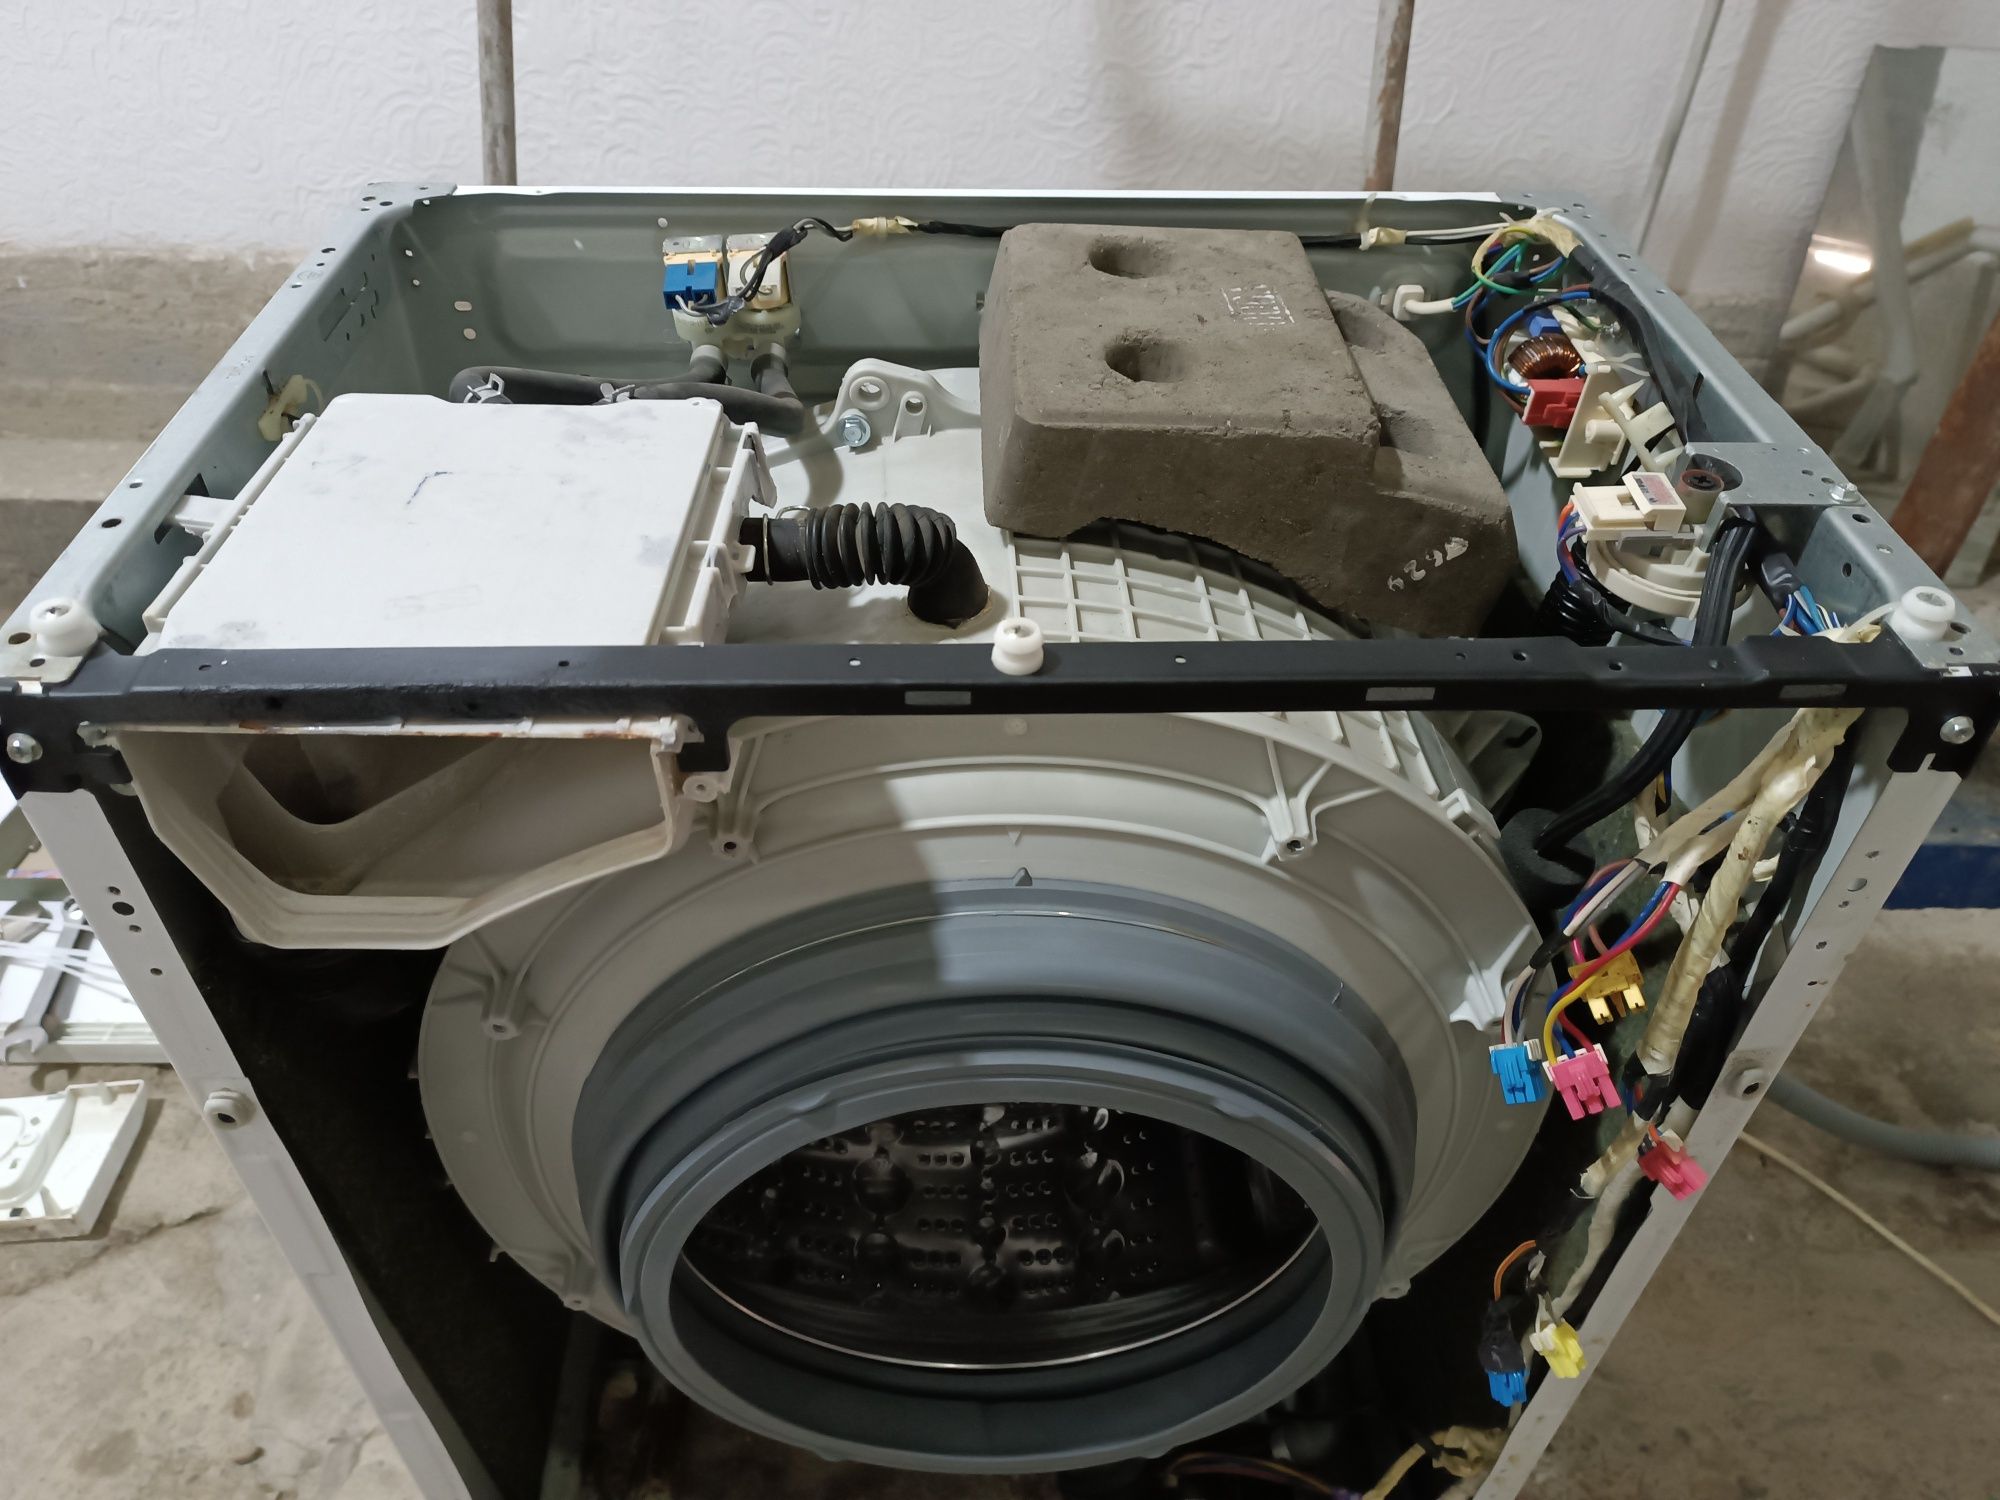 Обслуживание стиральных машин